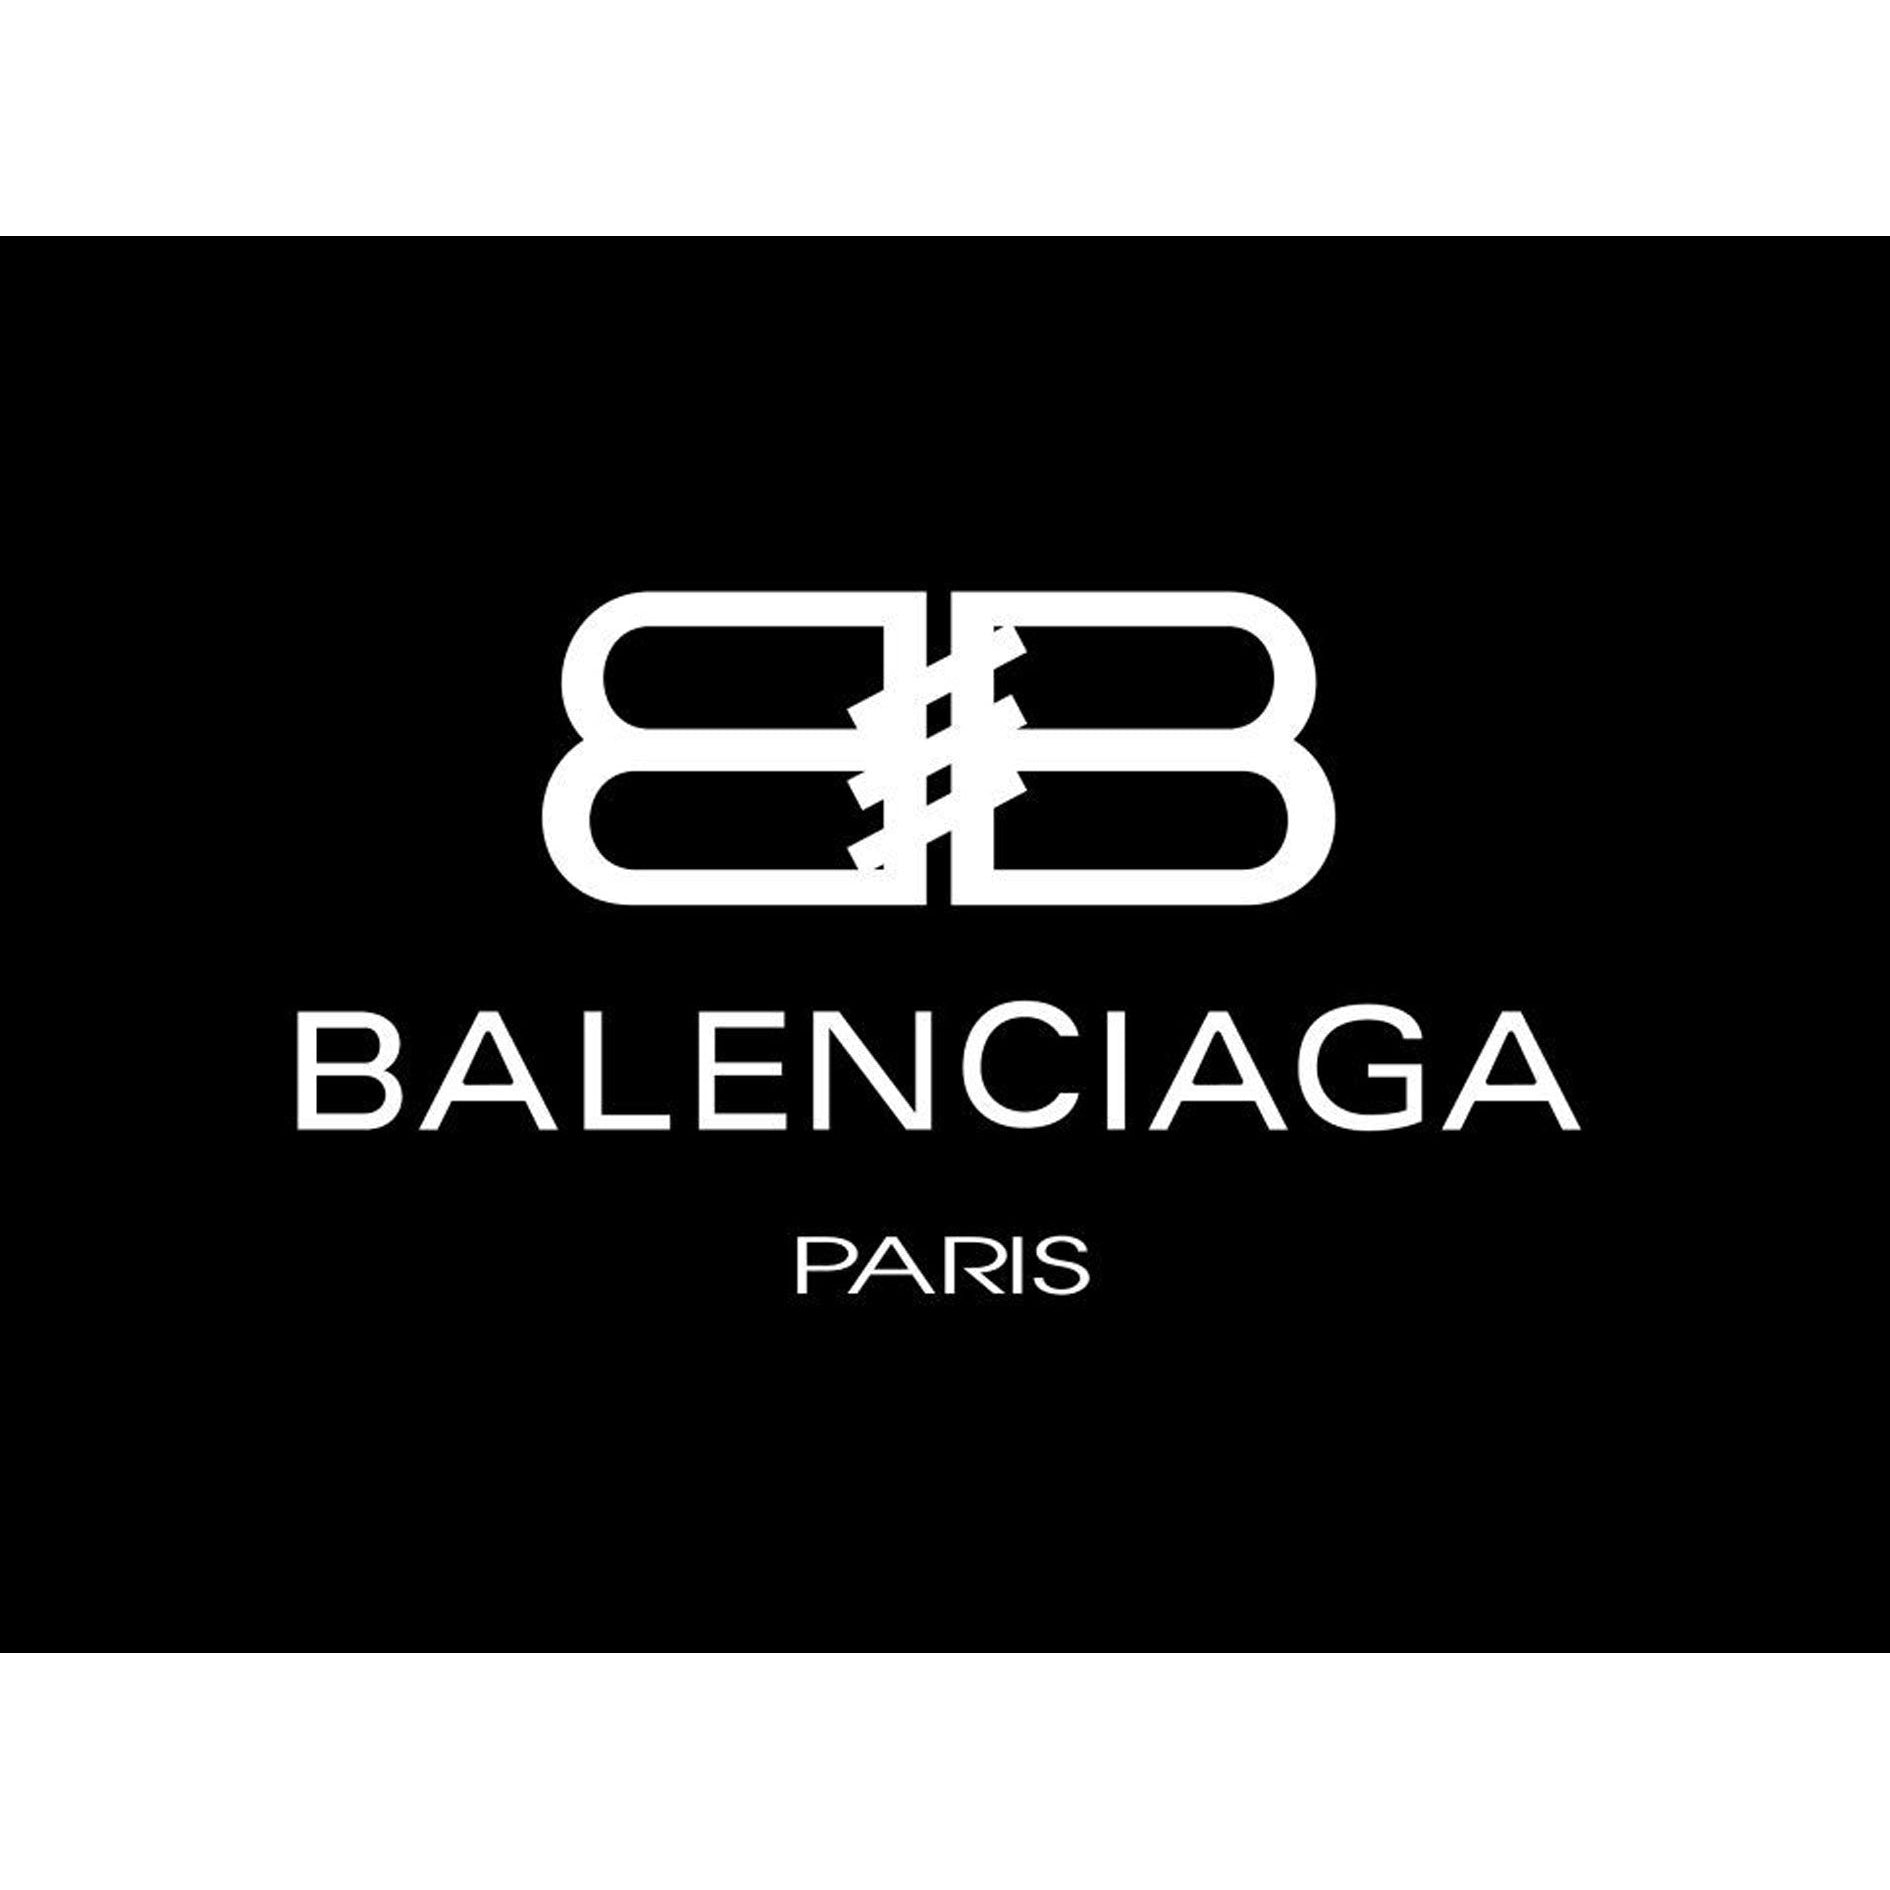 Balenciaga BB Outline SVG Download Balenciaga Logo Vector File Balenciaga  Brand Logo png file Balenciaga BB Outline SVG sil  Fashion logo  branding Svg  logo